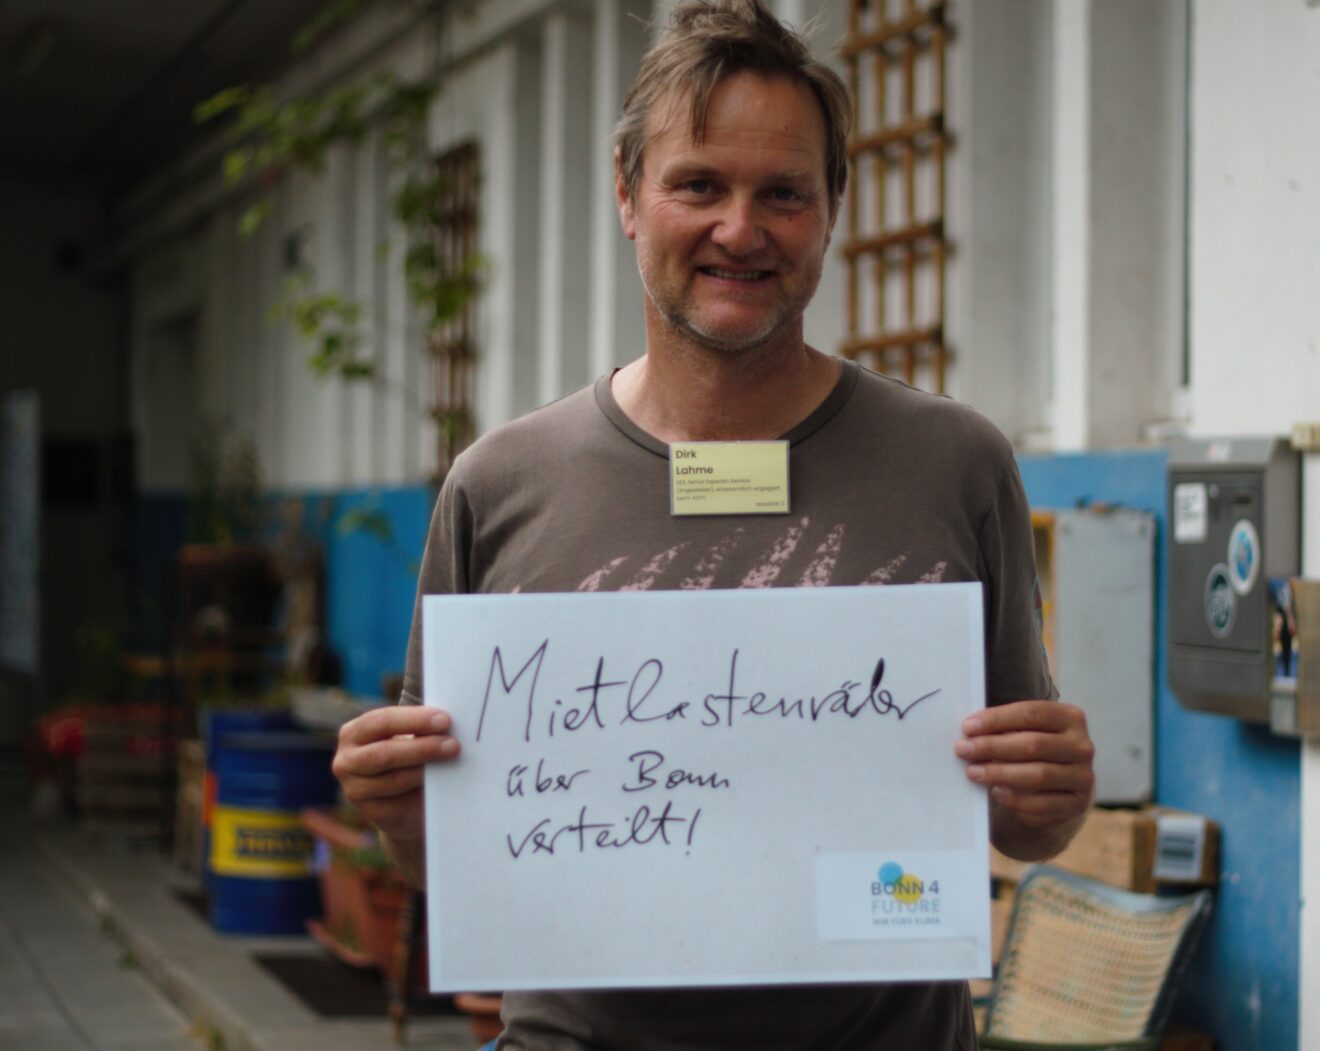 Teilnehmender mit Plakat: Mietlastenräder über Bonn verteilt